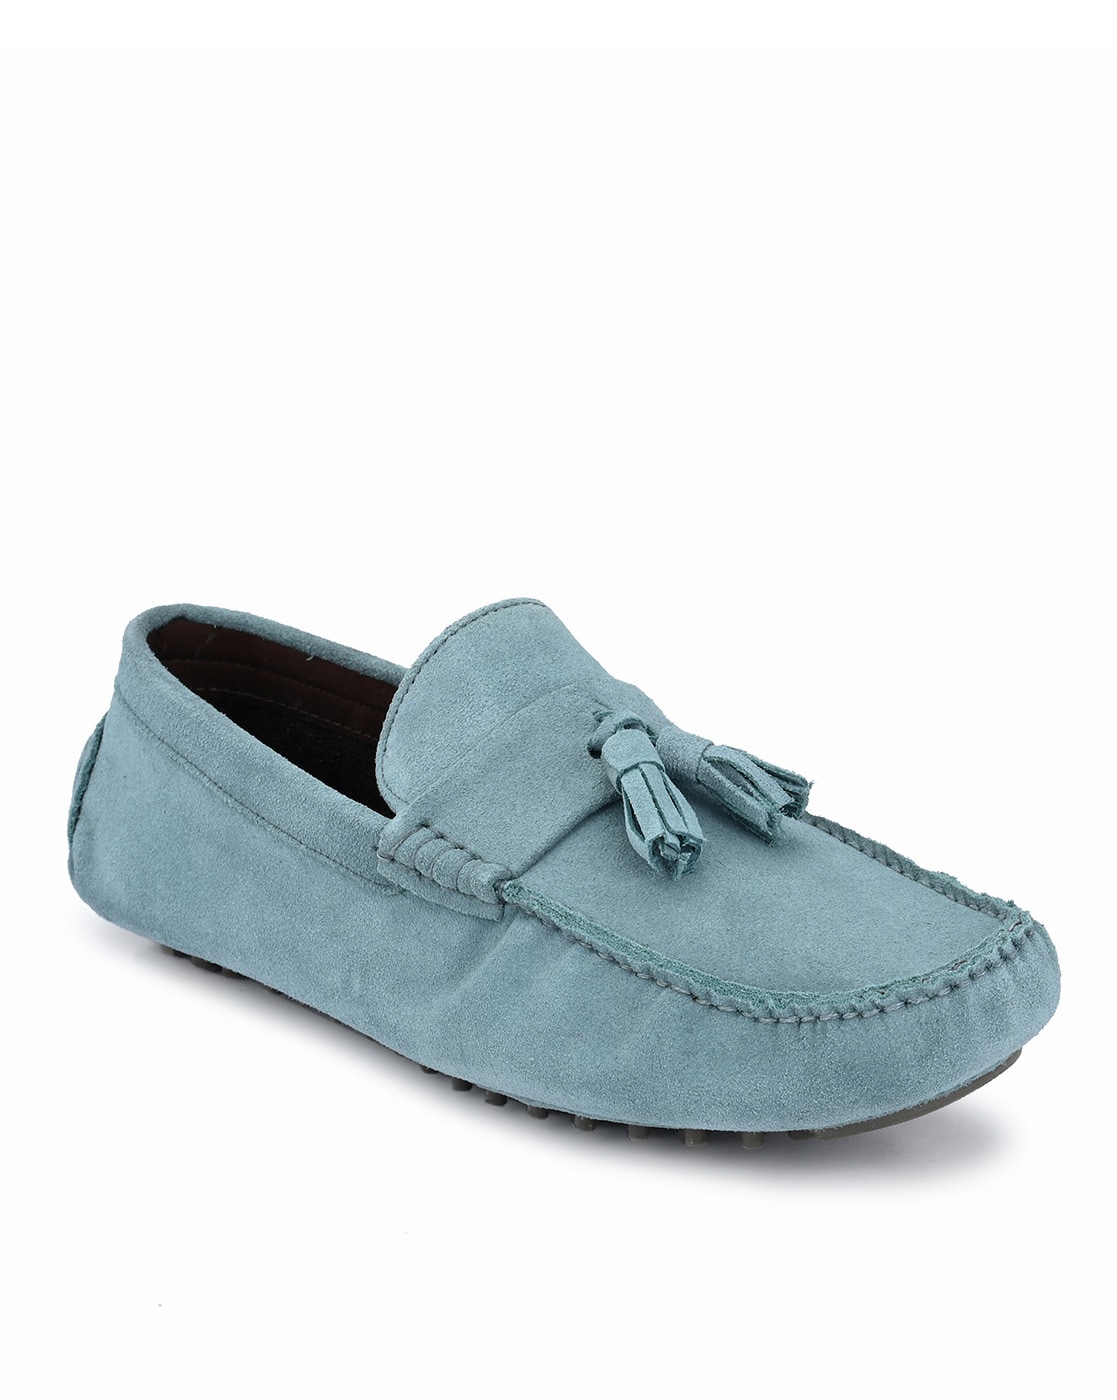 sky blue loafer shoes